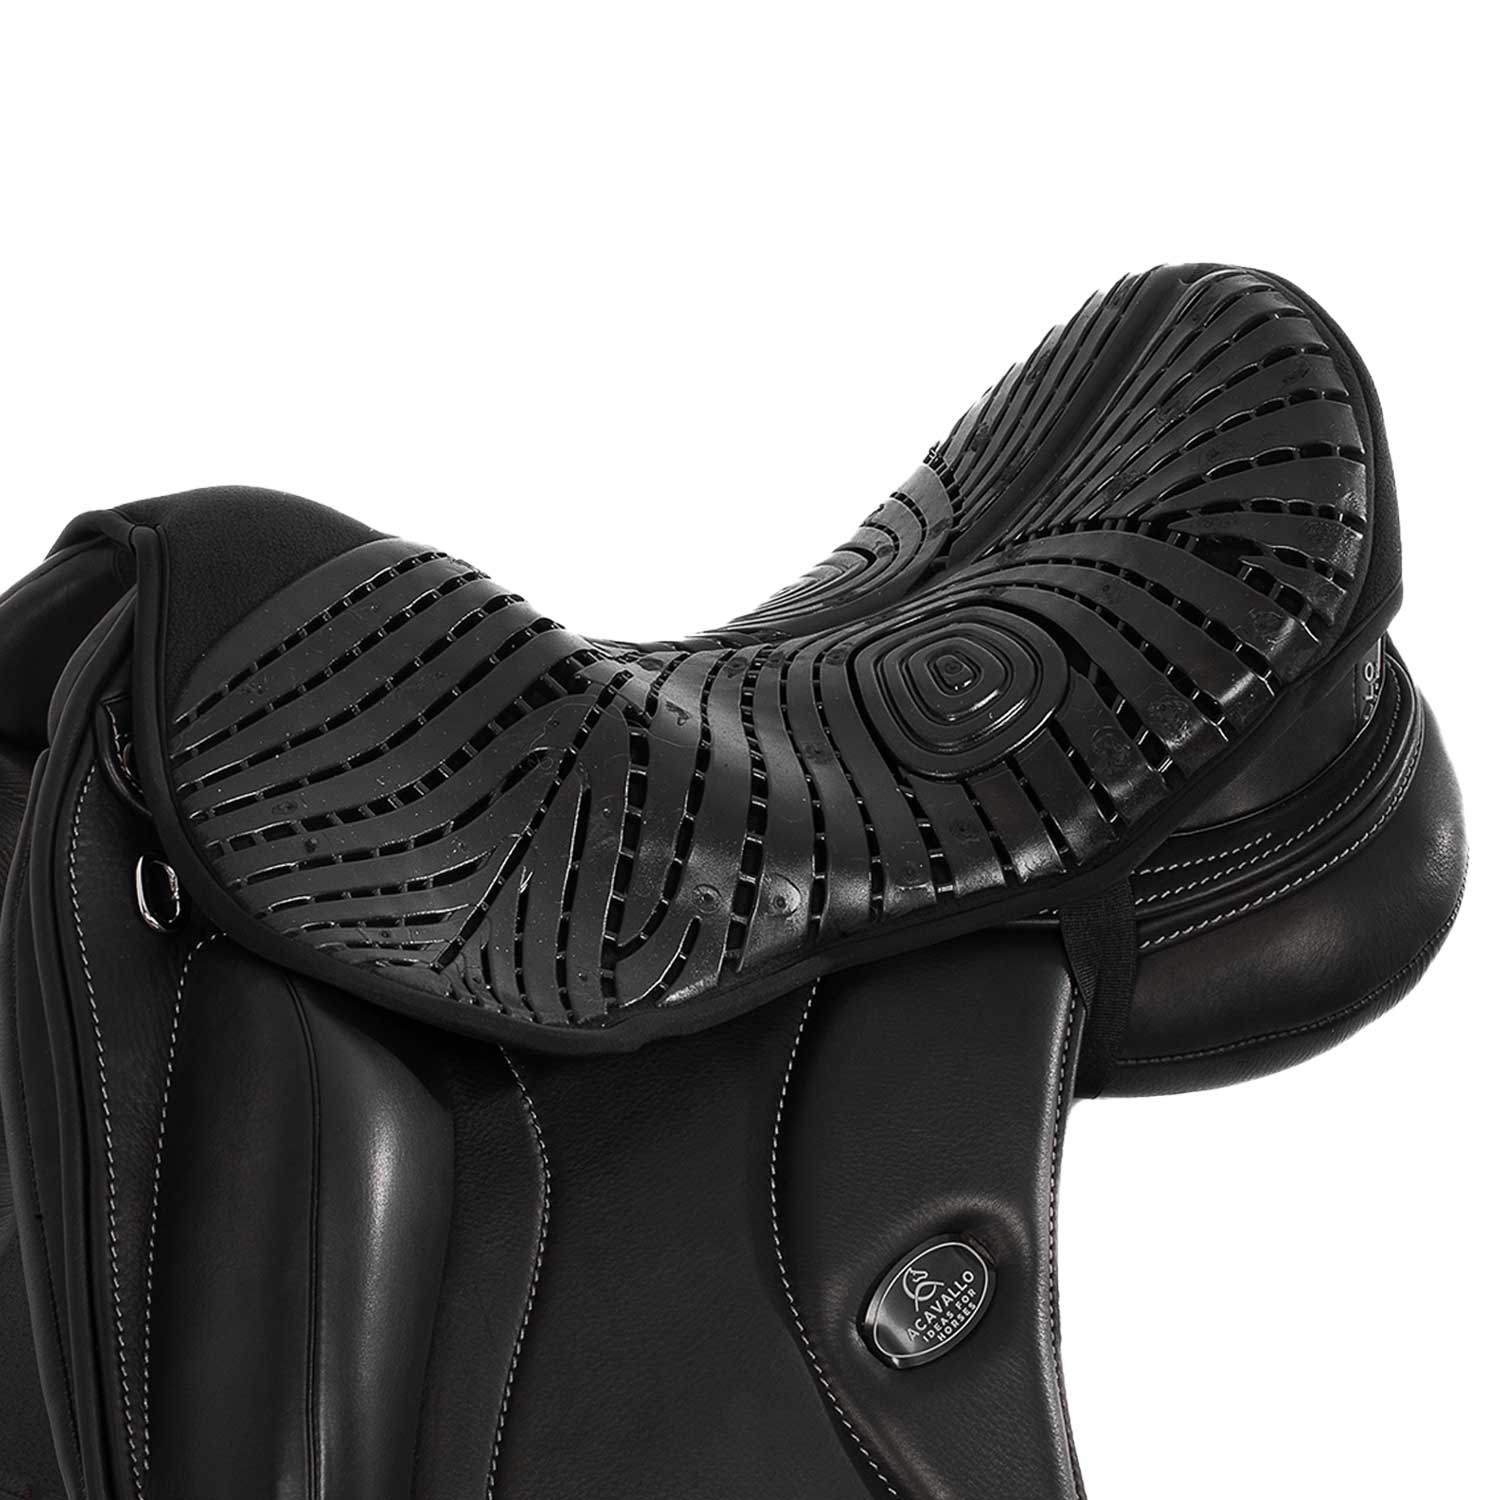 Sitz Bezug Dressage seat saver Dri-lex 10mm Air Plus gel out - Reitstiefel Kandel - Dein Reitshop